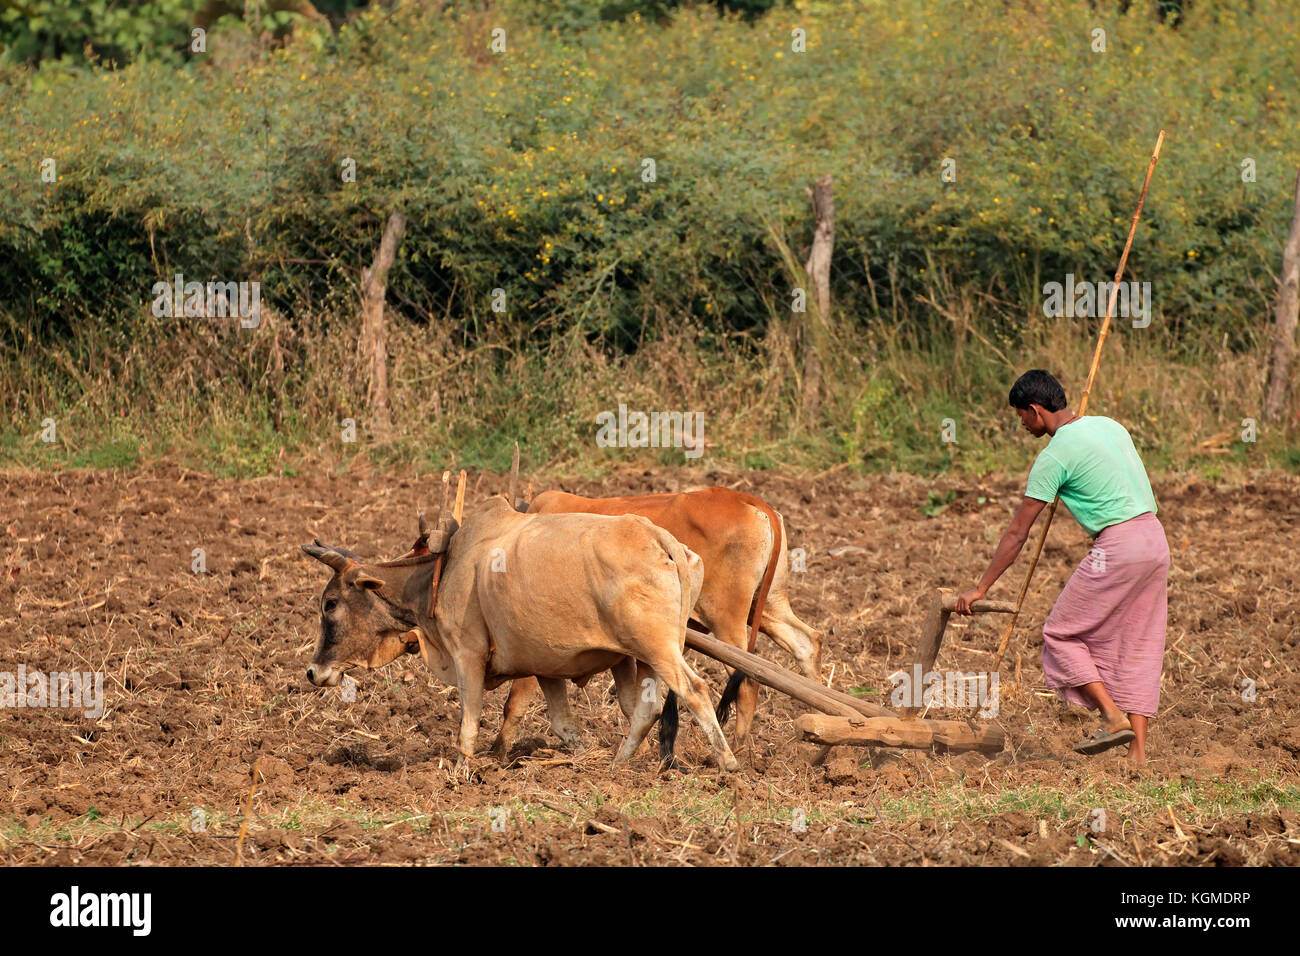 Jabalpur, Indien - 28. November 2015: Eine ländliche indische Bauer sein Feld pflügt mit einem traditionellen hölzernen Pflügen und Ochsen Team Stockfoto